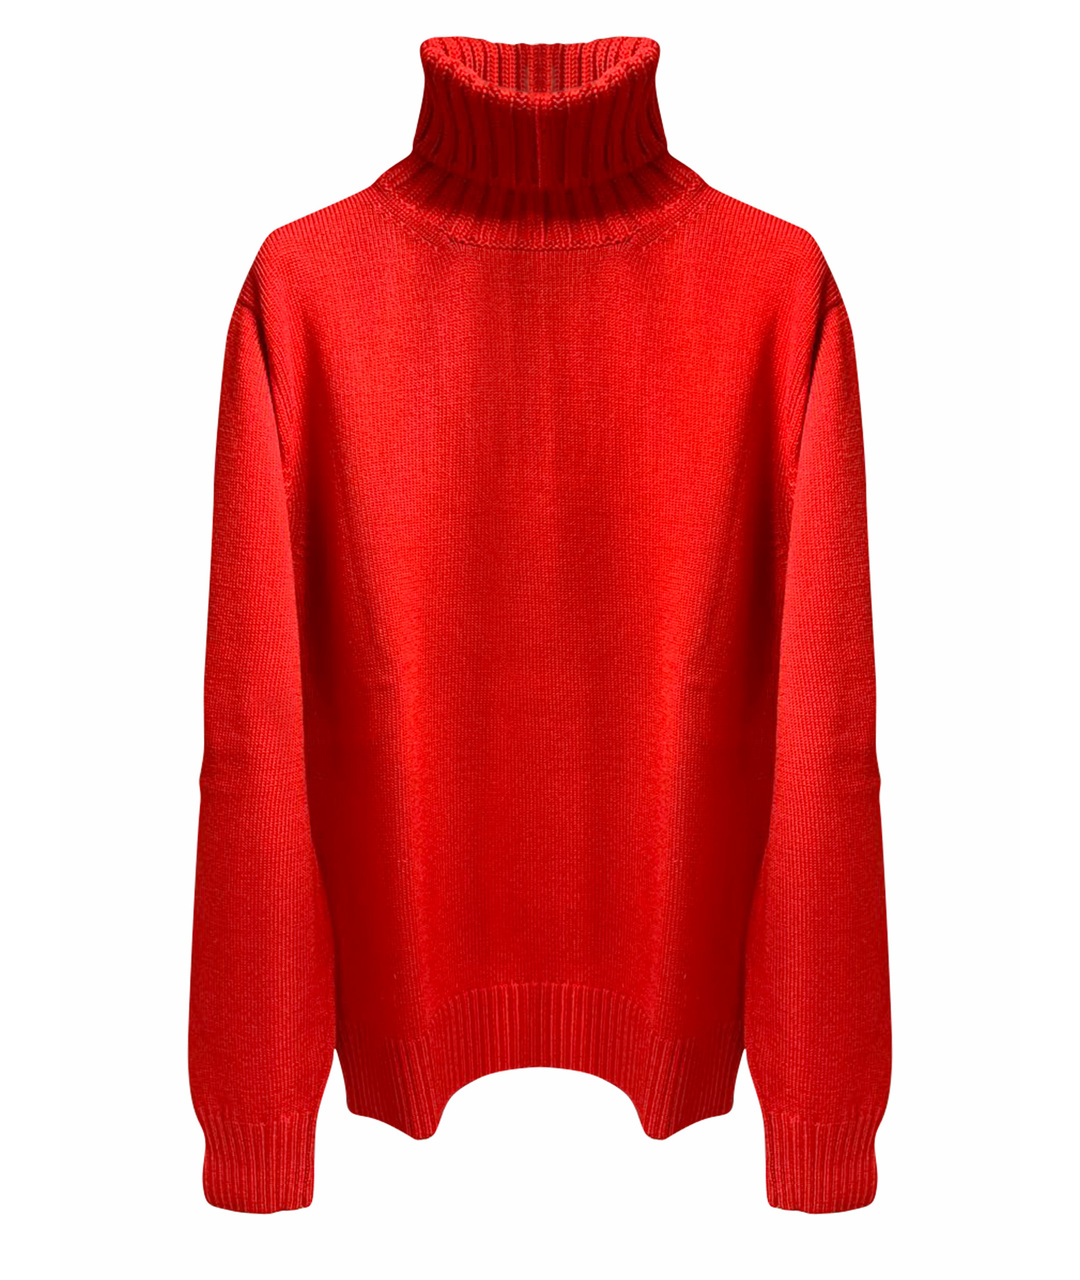 RUFFO Красный шерстяной джемпер / свитер, фото 1